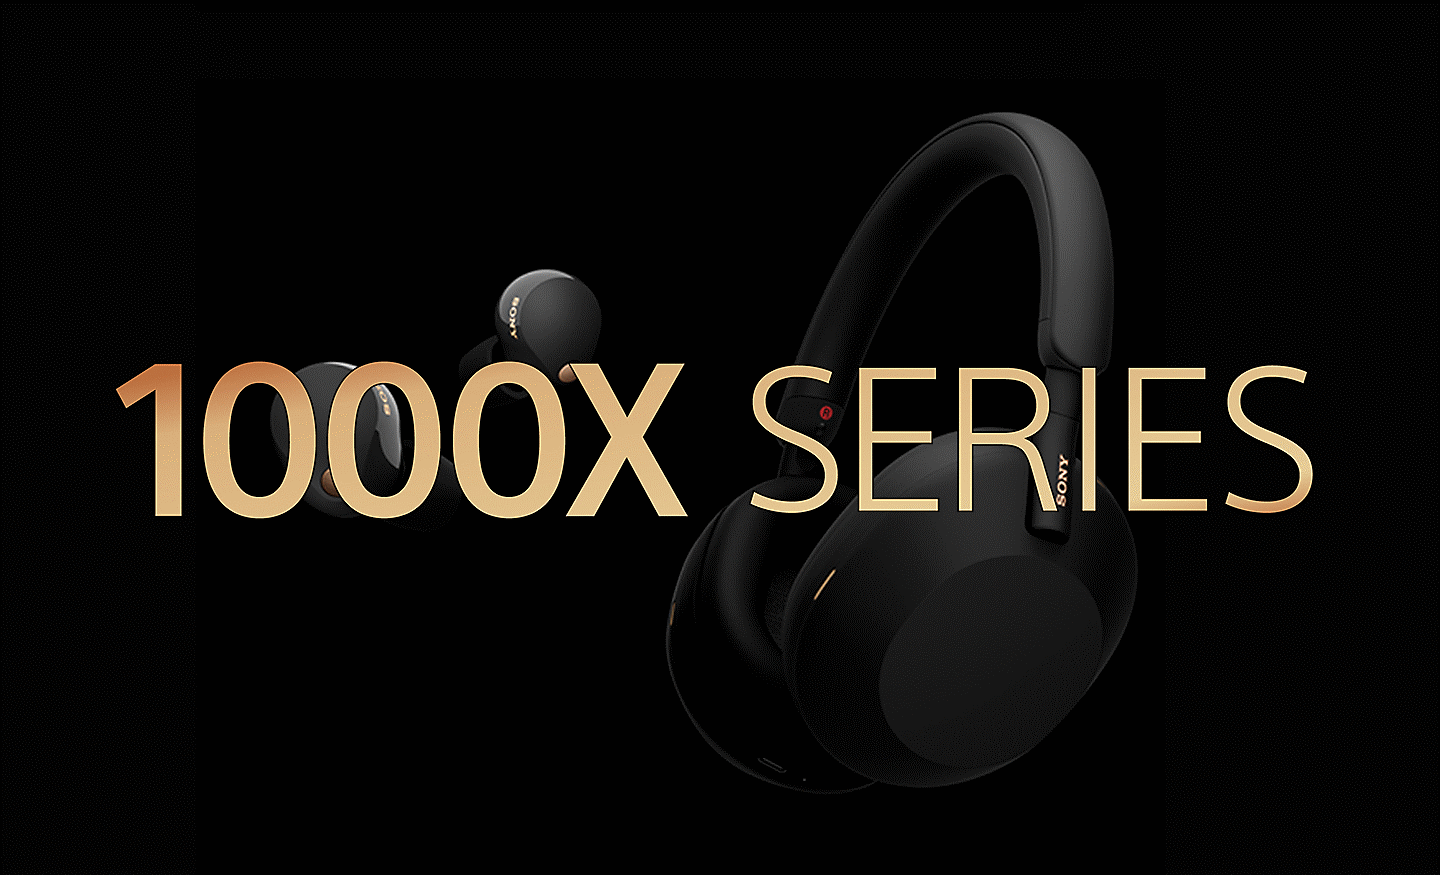 Εικόνα δύο σετ ακουστικών Sony σε μαύρο φόντο με χρυσό κείμενο 1000X SERIES μπροστά